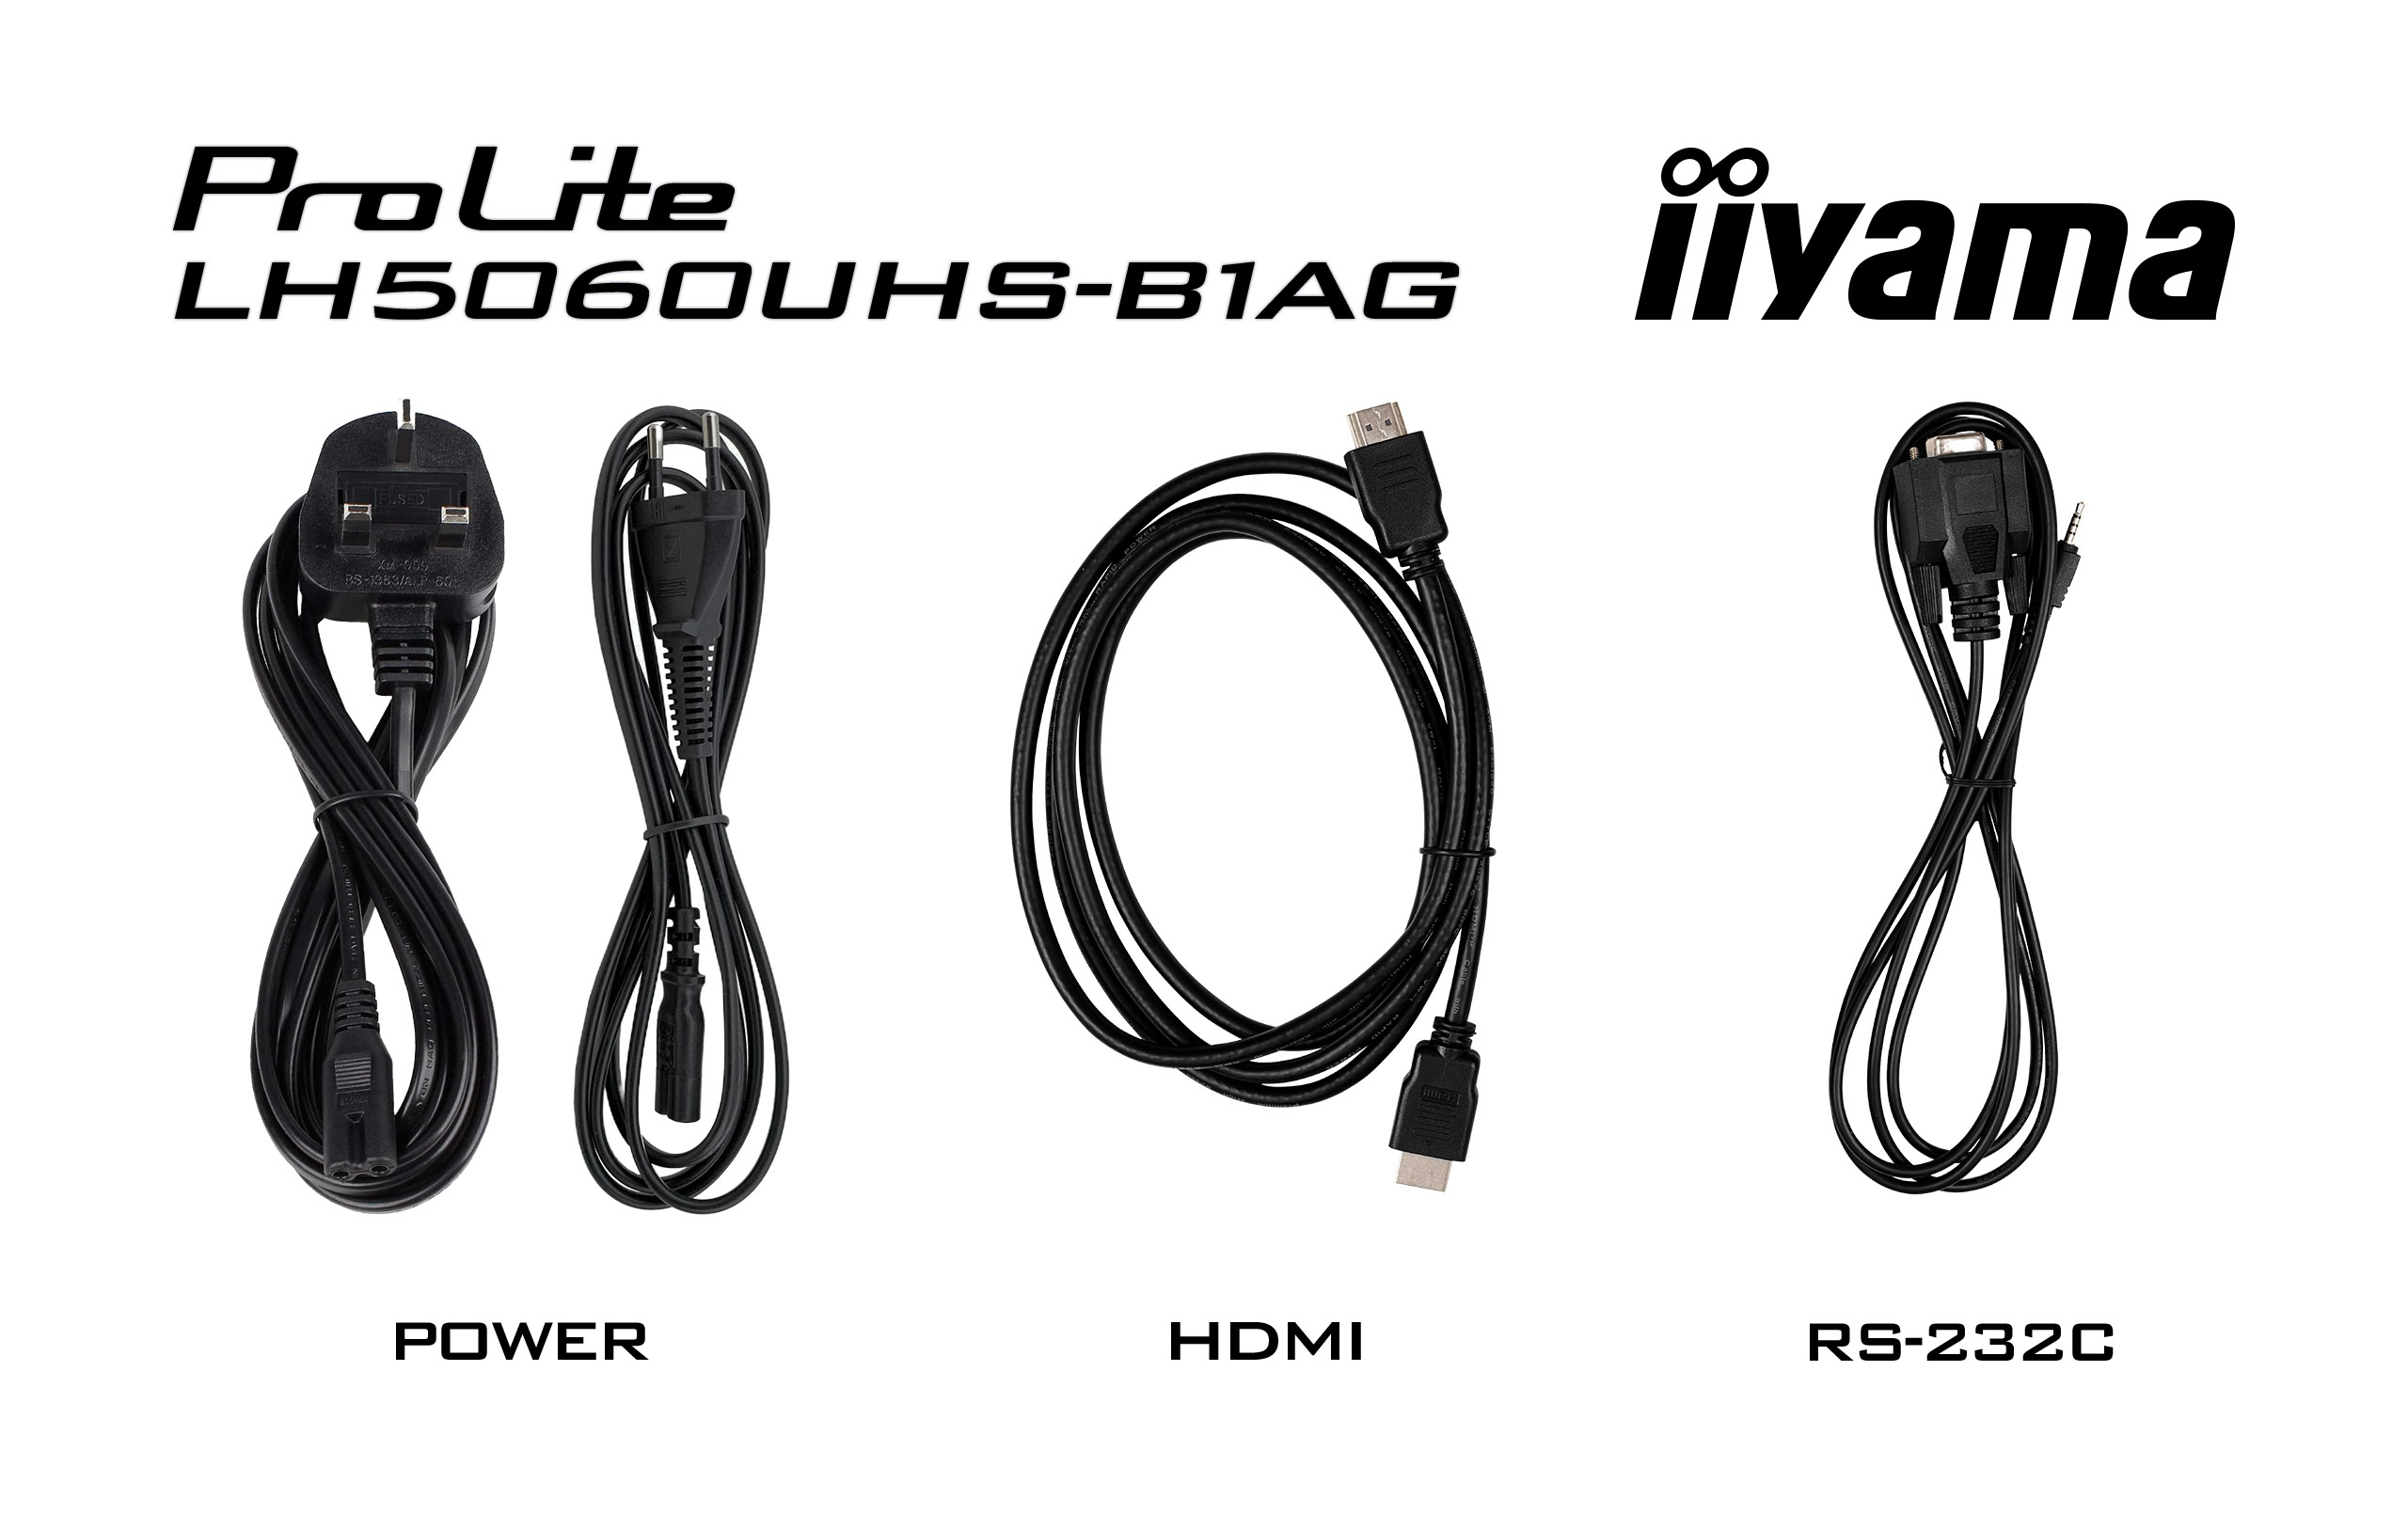 iiyama ProLite LH5060UHS-B1AG - 50 Zoll - 500 cd/m² - 4K - UHD - 3840 x 2160 Pixel - 24/7 - Android - Display